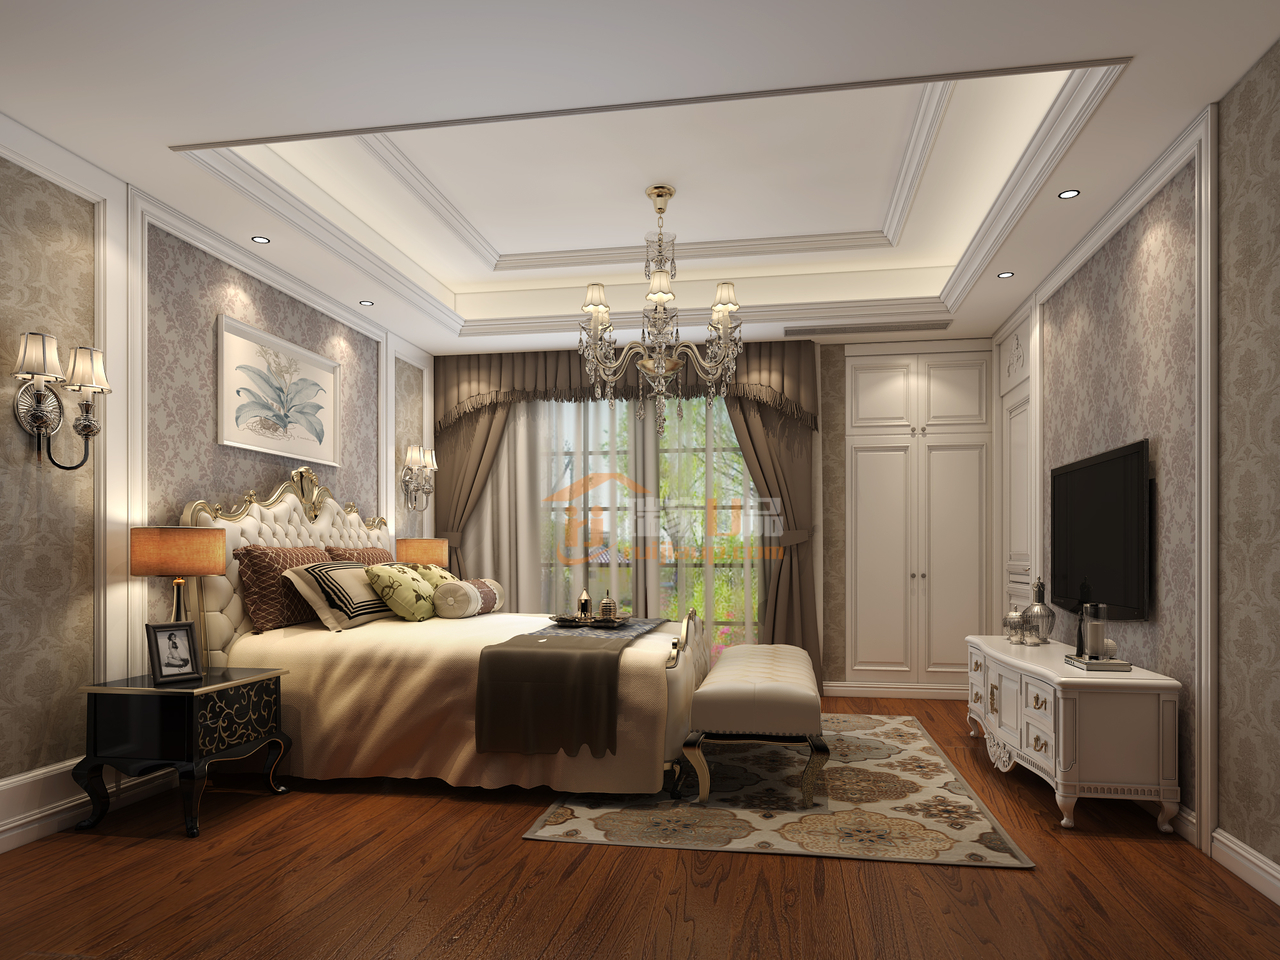 地面深色实木地板结合墙面白色实木护墙板，搭配咖啡色窗帘，营造出一种温习舒适休息空间。